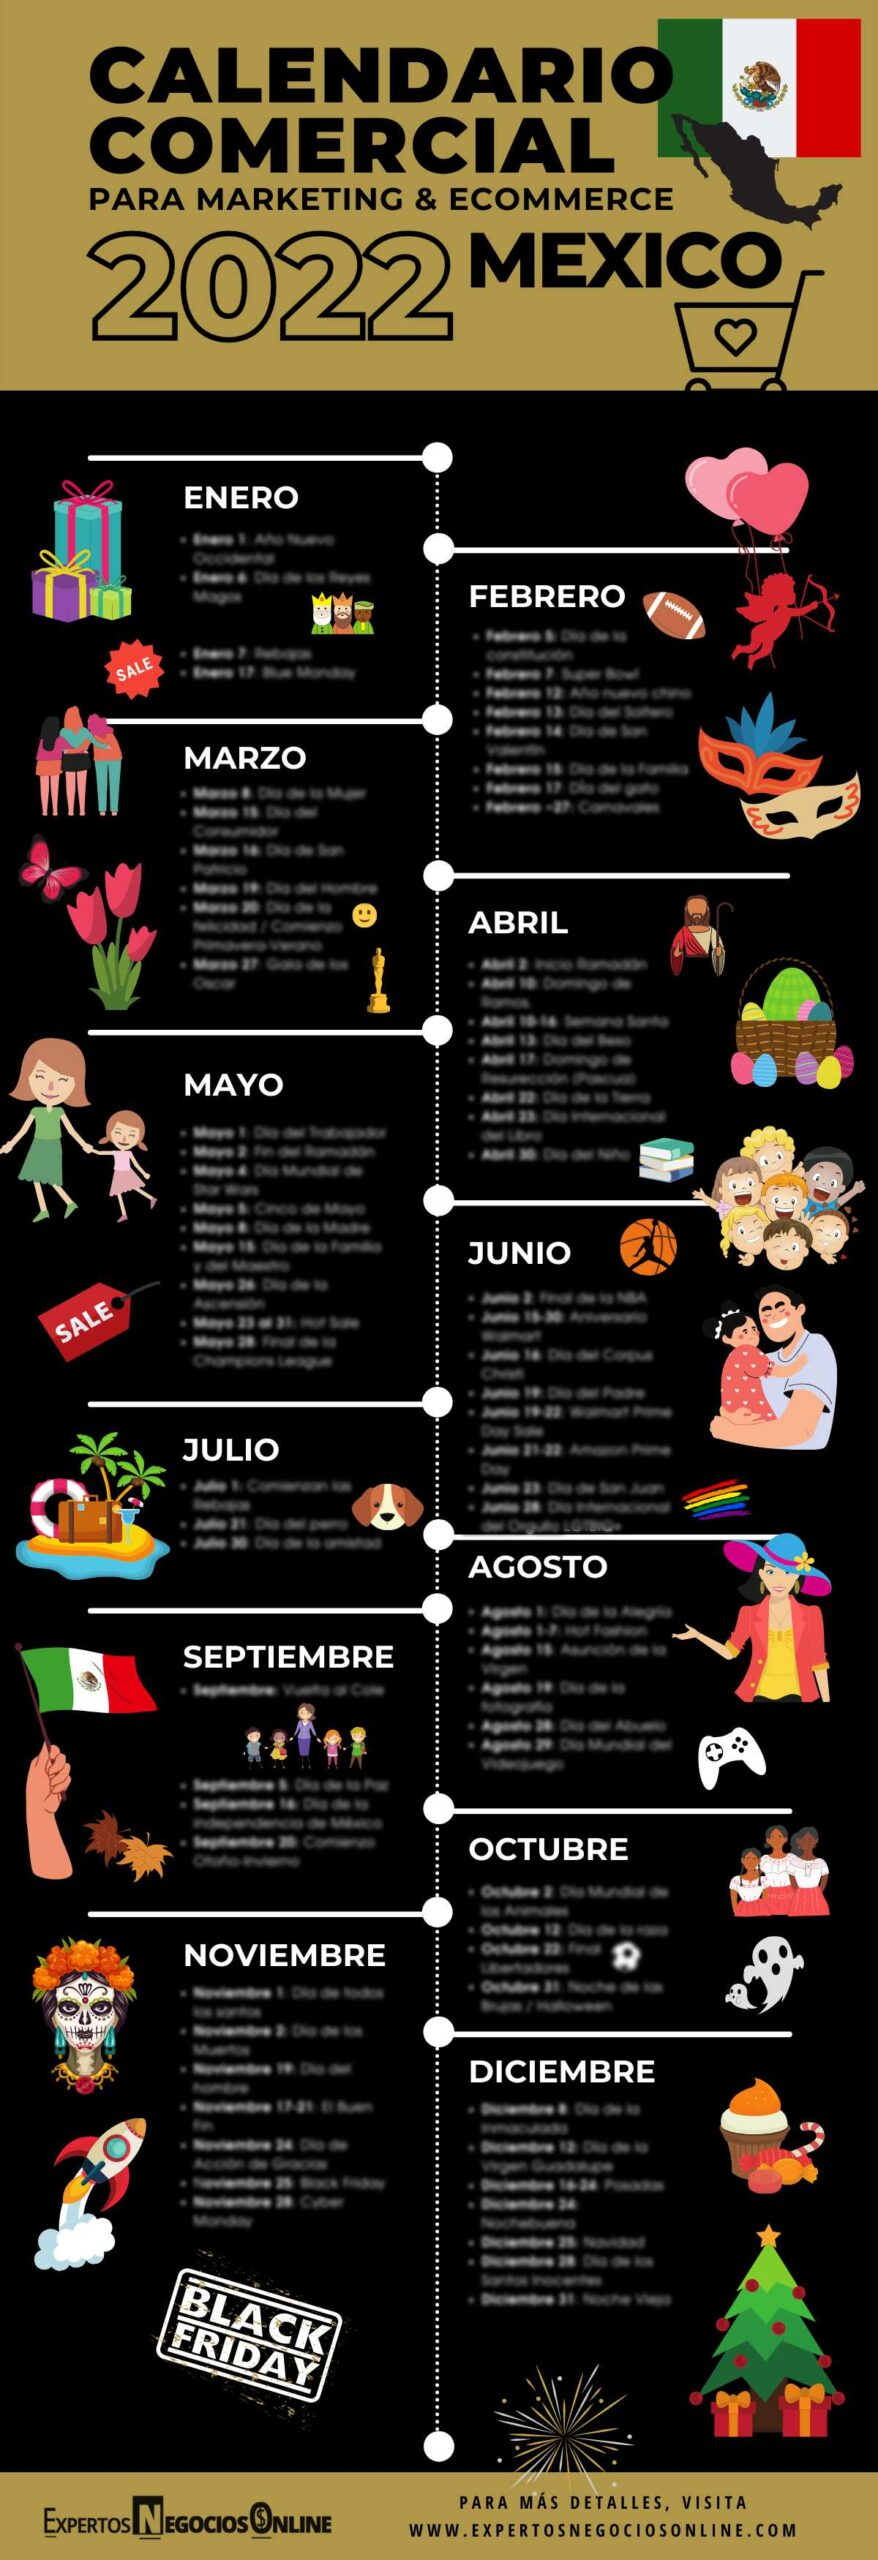 Descargar Calendario Comercial México 2022 - Para Marketing Digital y eCommerce